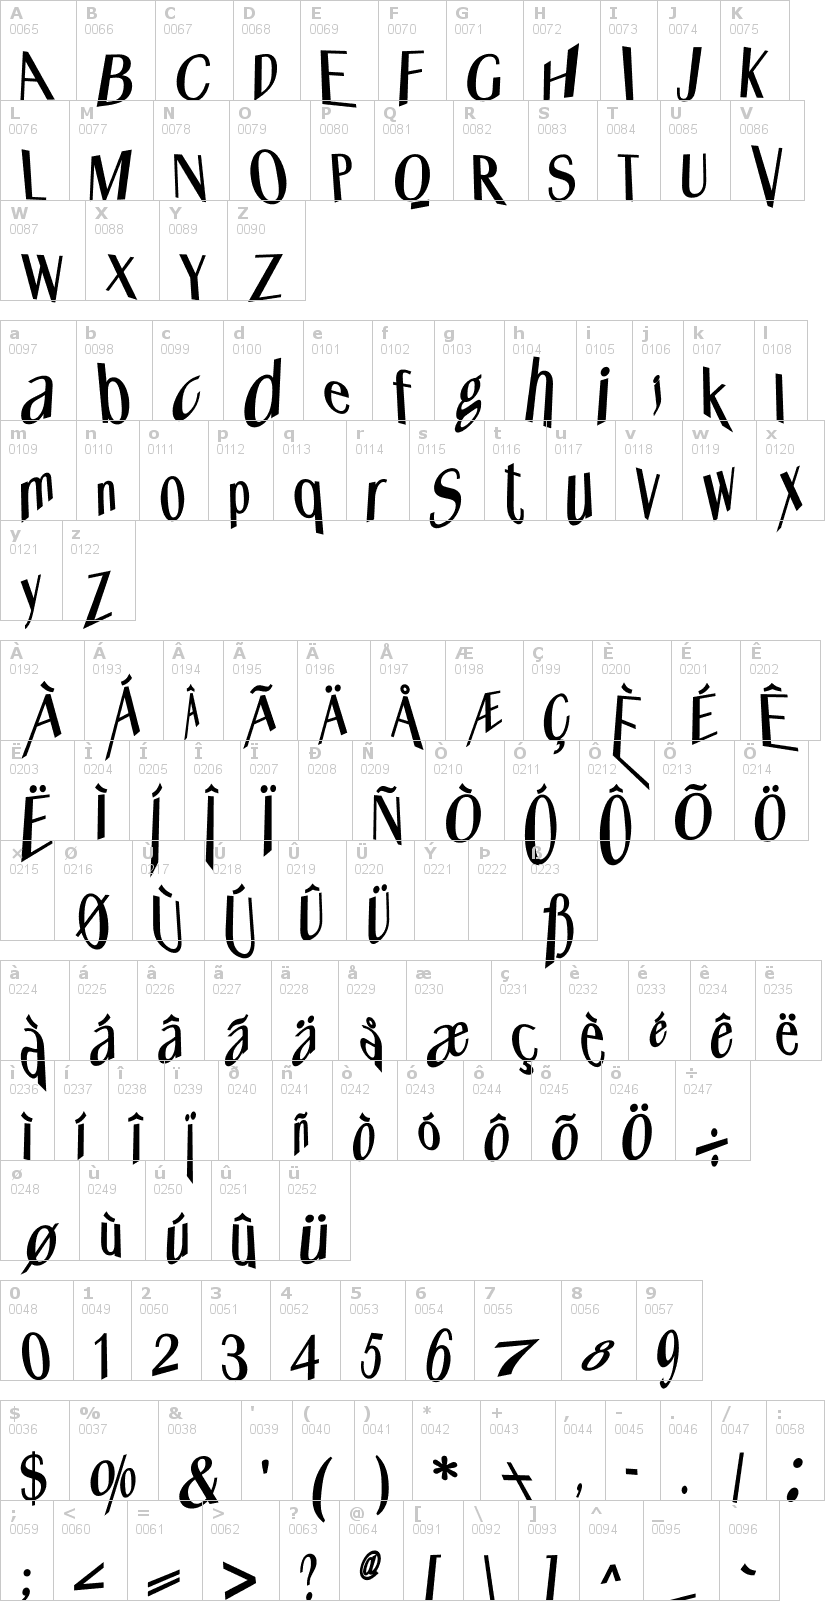 Lettere dell'alfabeto del font whats-happened con le quali è possibile realizzare adesivi prespaziati